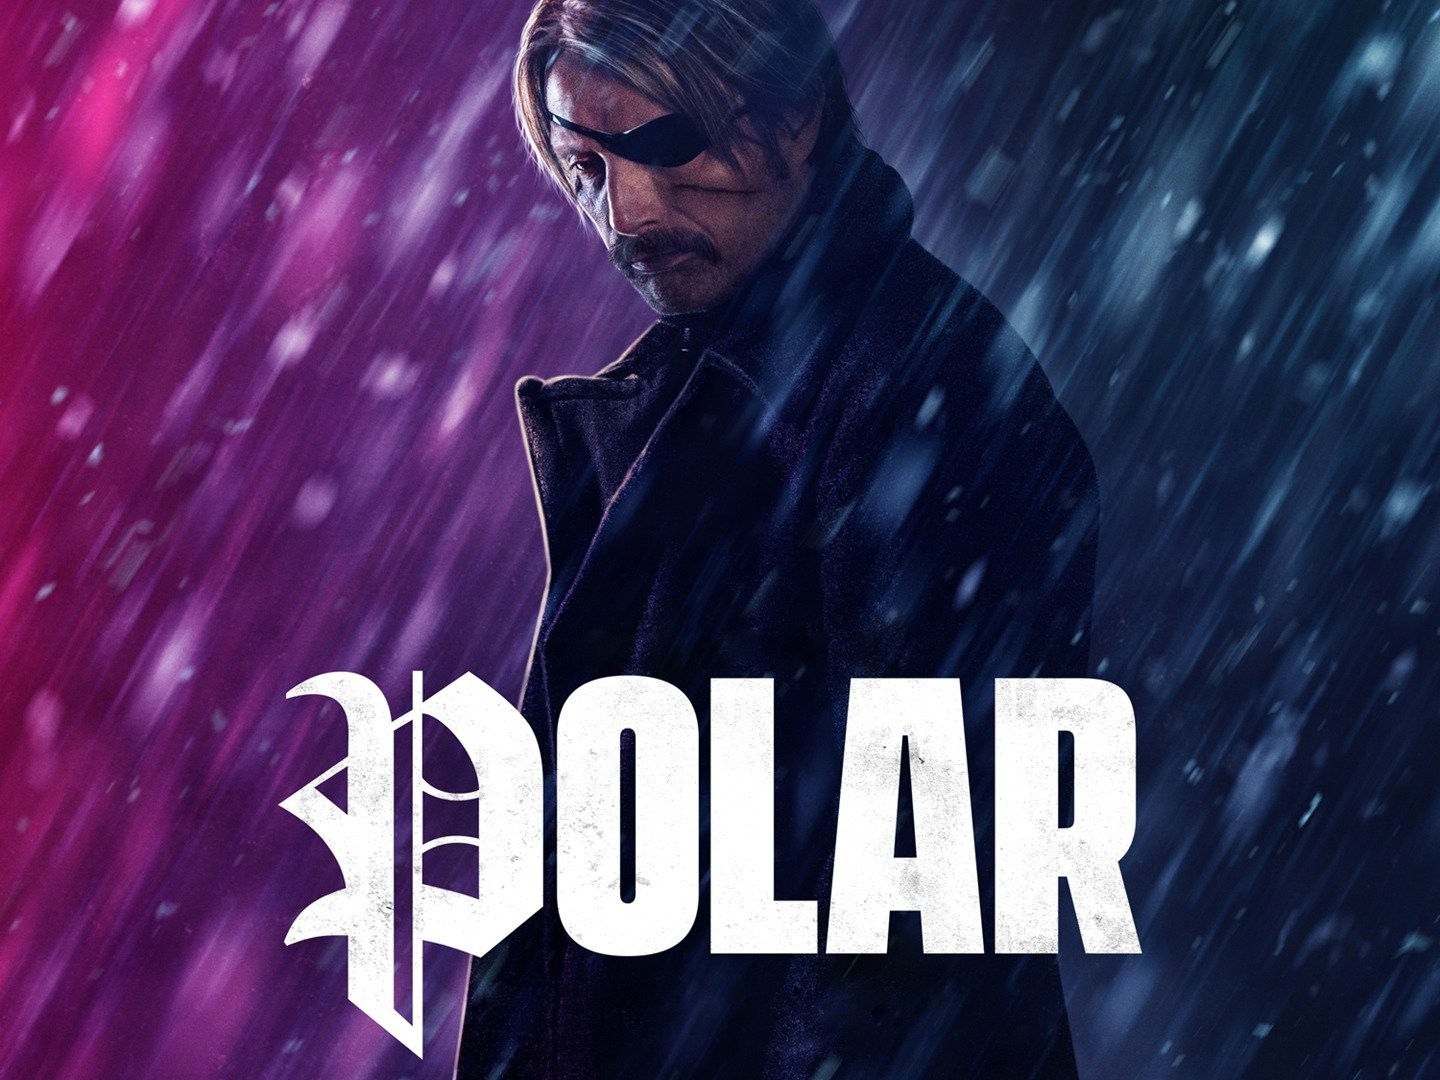 Polar (2019) - IMDb